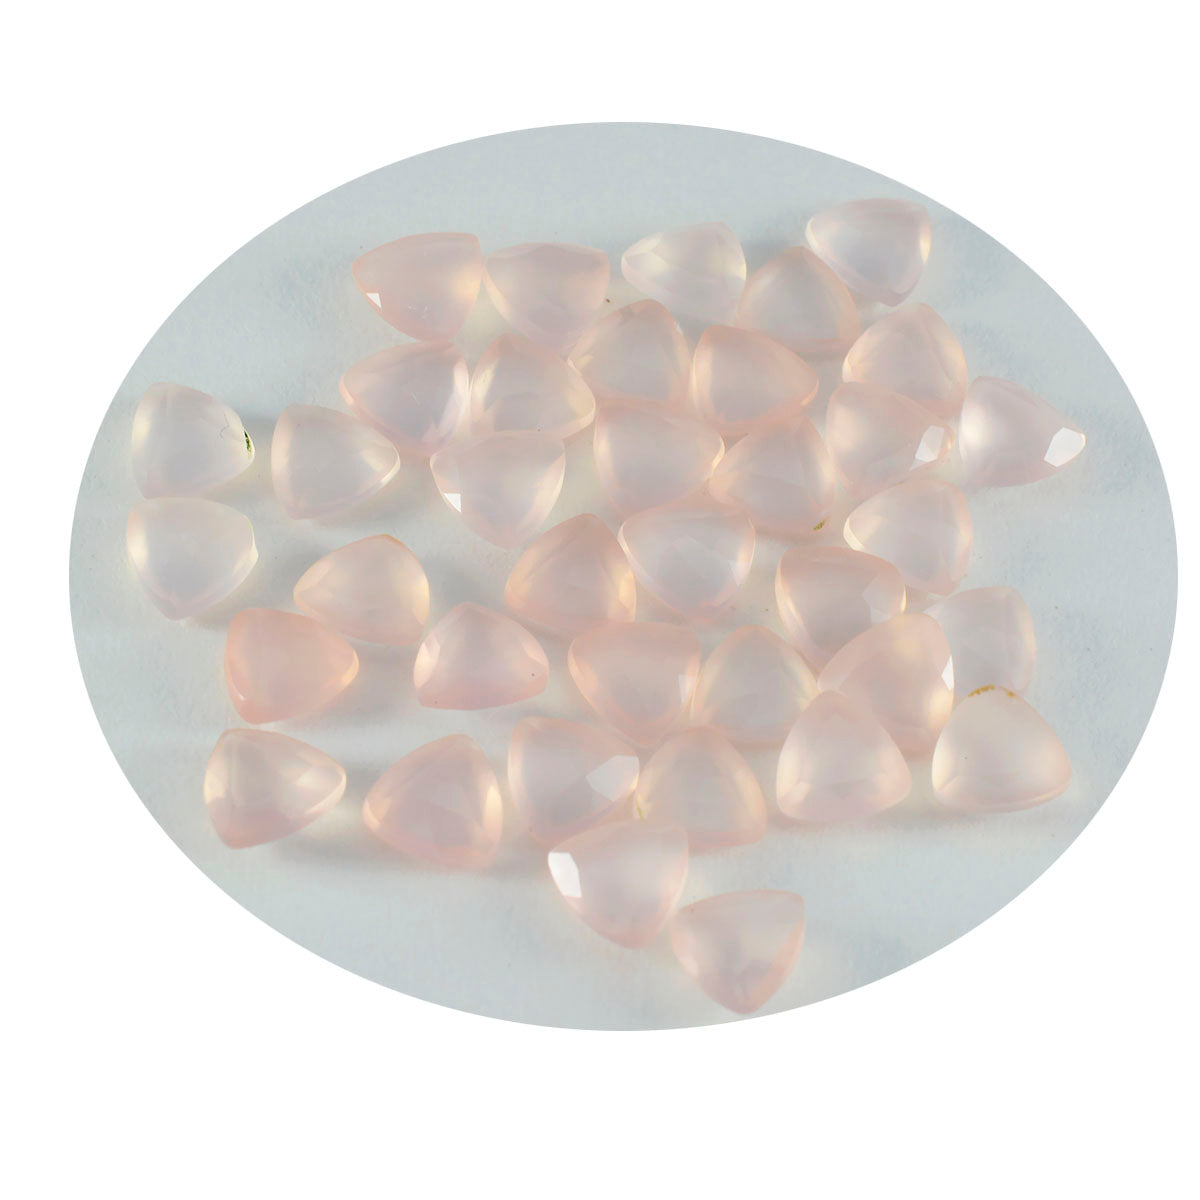 Riyogems 1pc quartz rose à facettes 7x7mm forme trillion aa qualité pierres précieuses en vrac